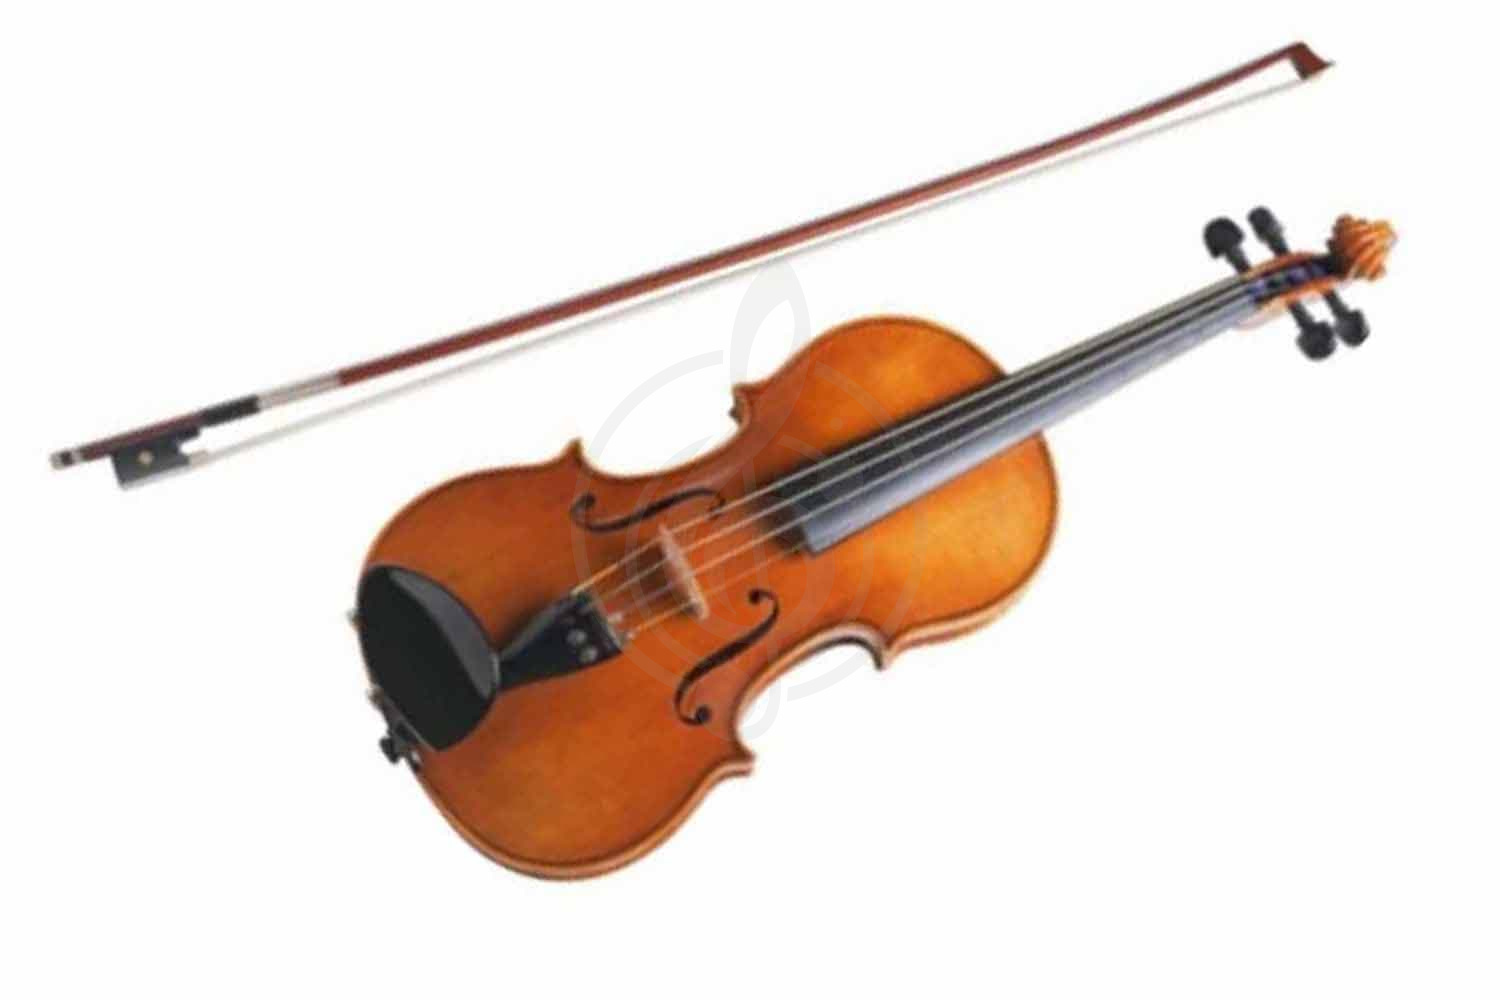 Скрипка 4/4 Скрипки 4/4 Caraya Caraya MV-001 - скрипка 4/4 с футляром и смычком MV-001 - фото 1